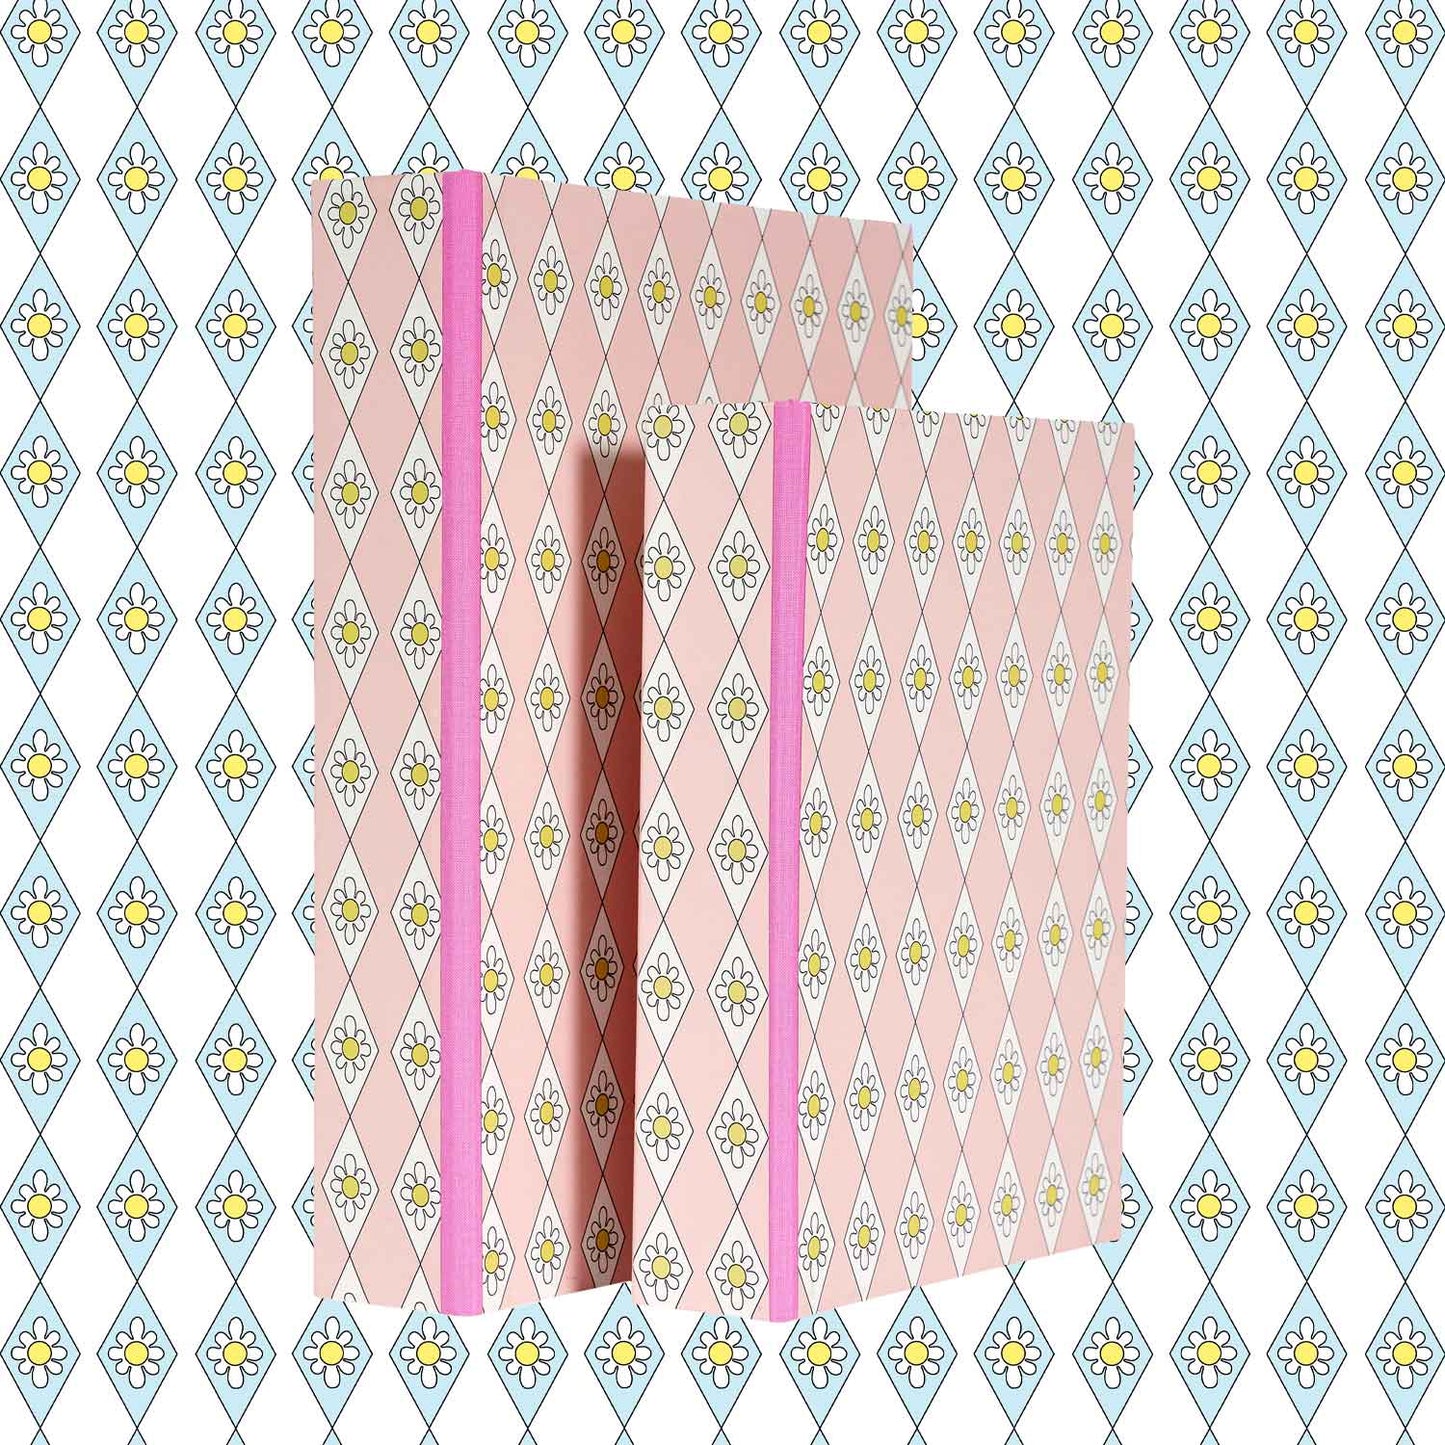 A4 Boxfile - Pink Diamond Daisy